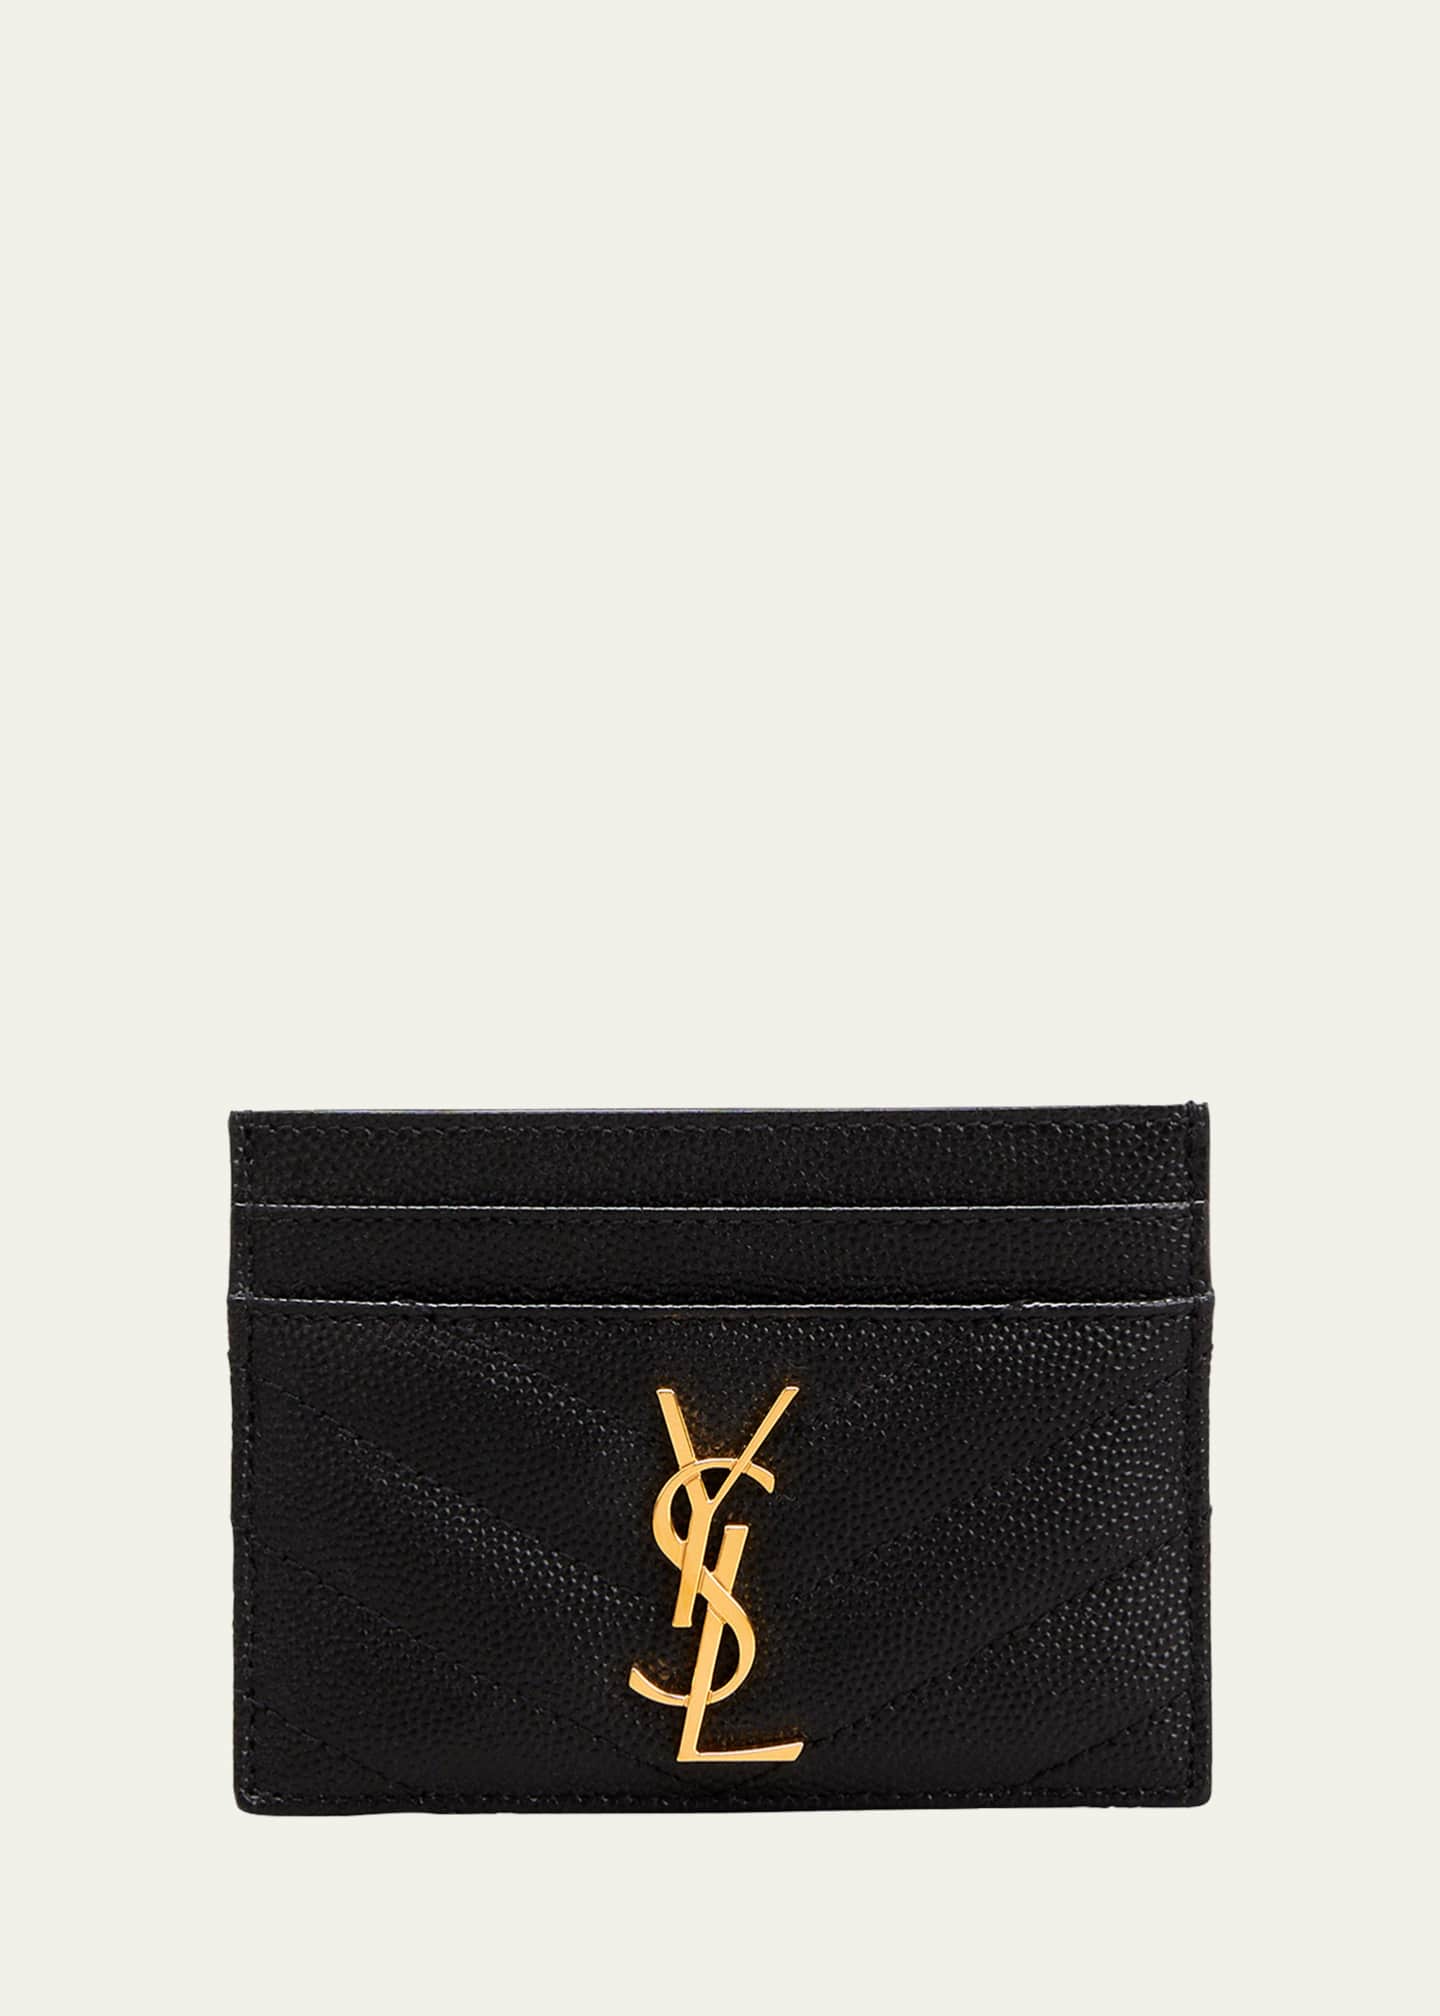 Saint Laurent YSL Grain de Poudre Leather Card Case, Golden